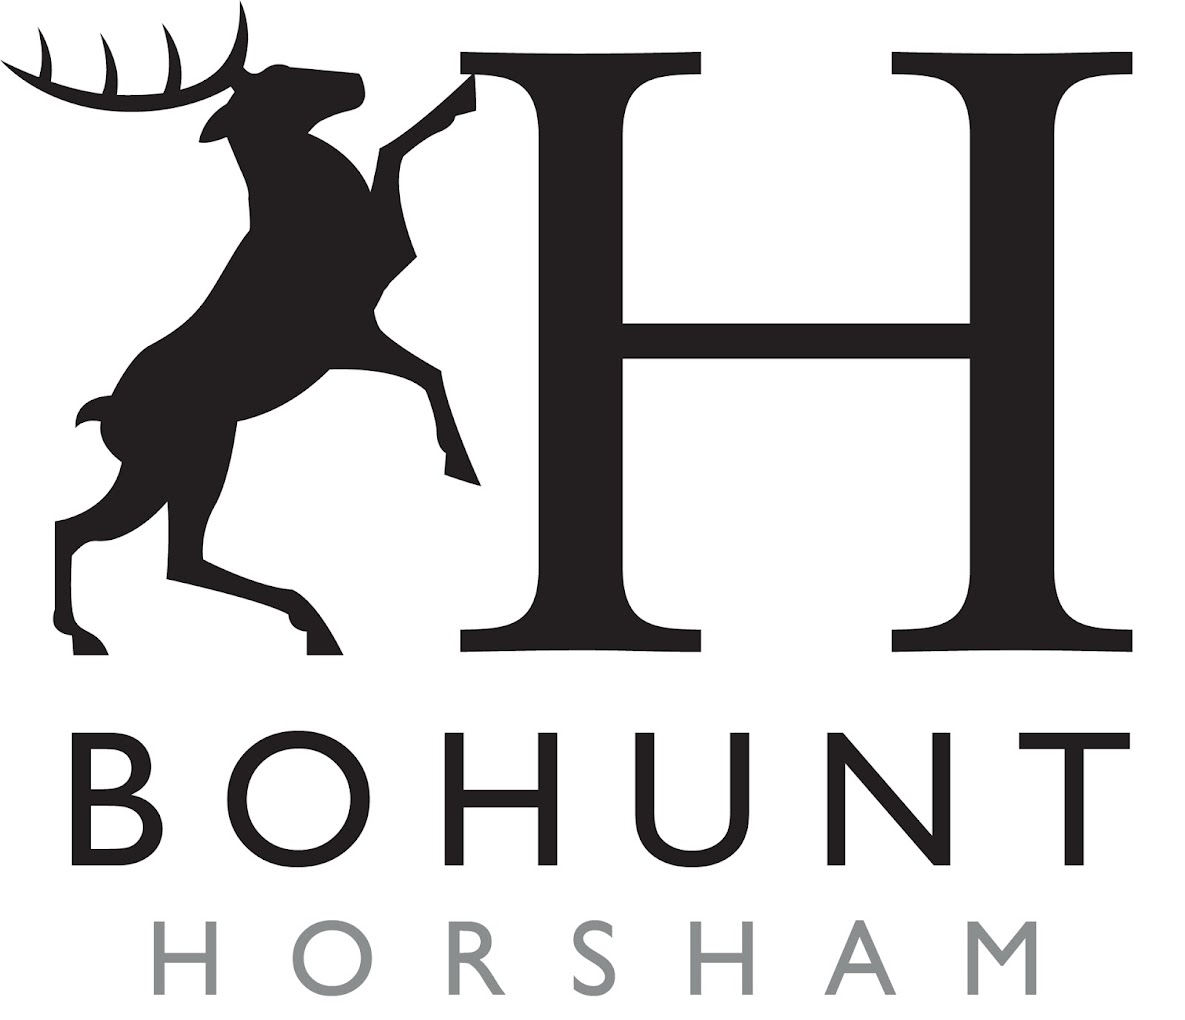 Bohunt School Horsham